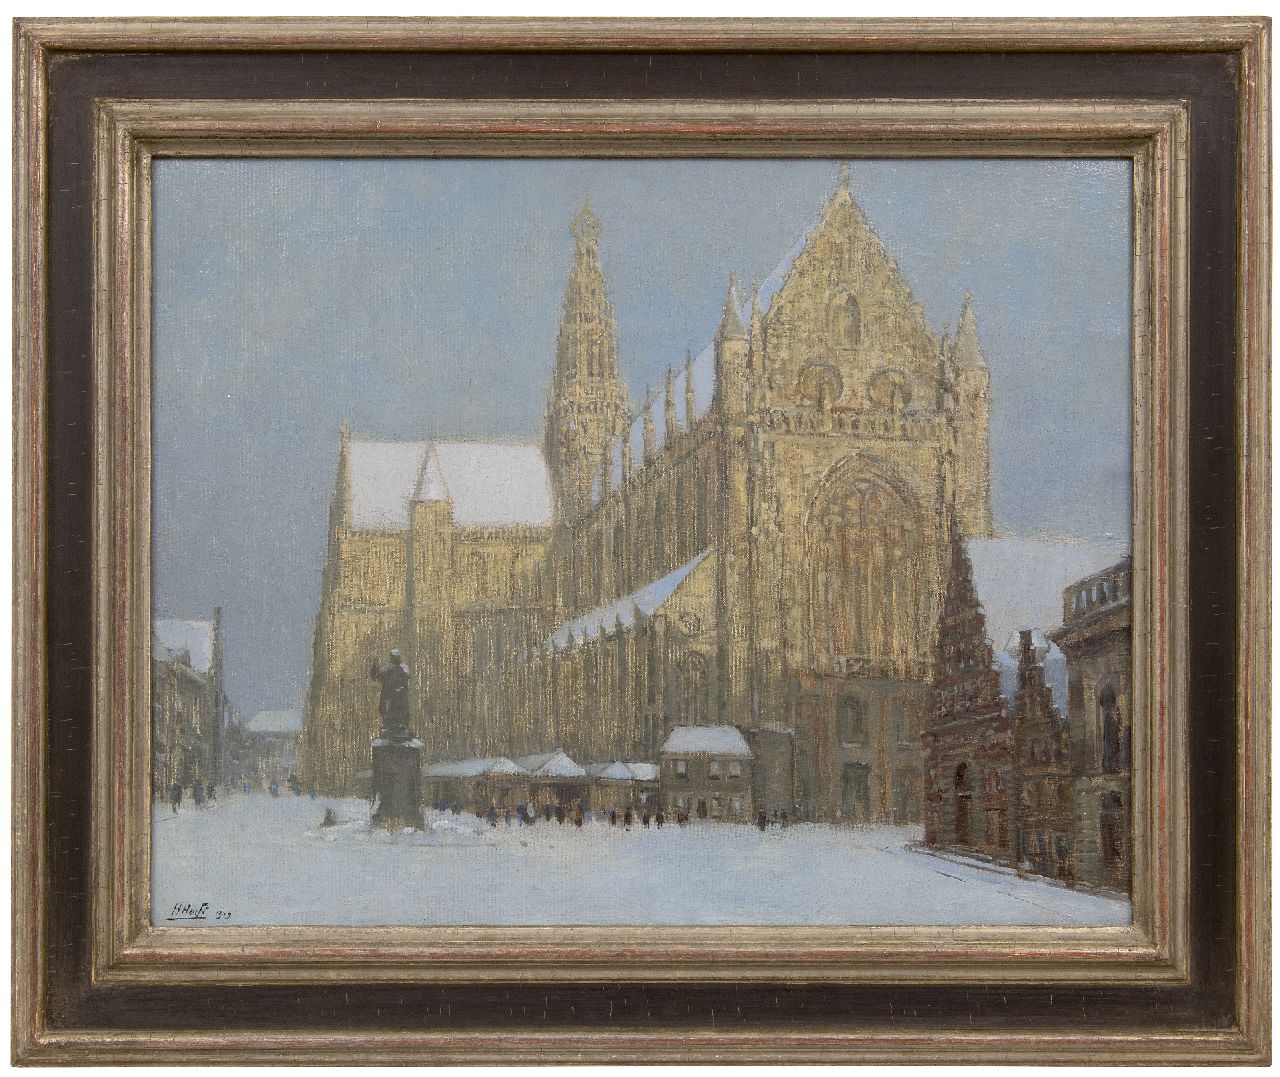 Heuff H.D.  | 'Herman' Davinus Heuff | Schilderijen te koop aangeboden | De St. Bavokerk in Haarlem in de sneeuw, olieverf op doek 49,3 x 63,2 cm, gesigneerd linksonder en gedateerd 1919